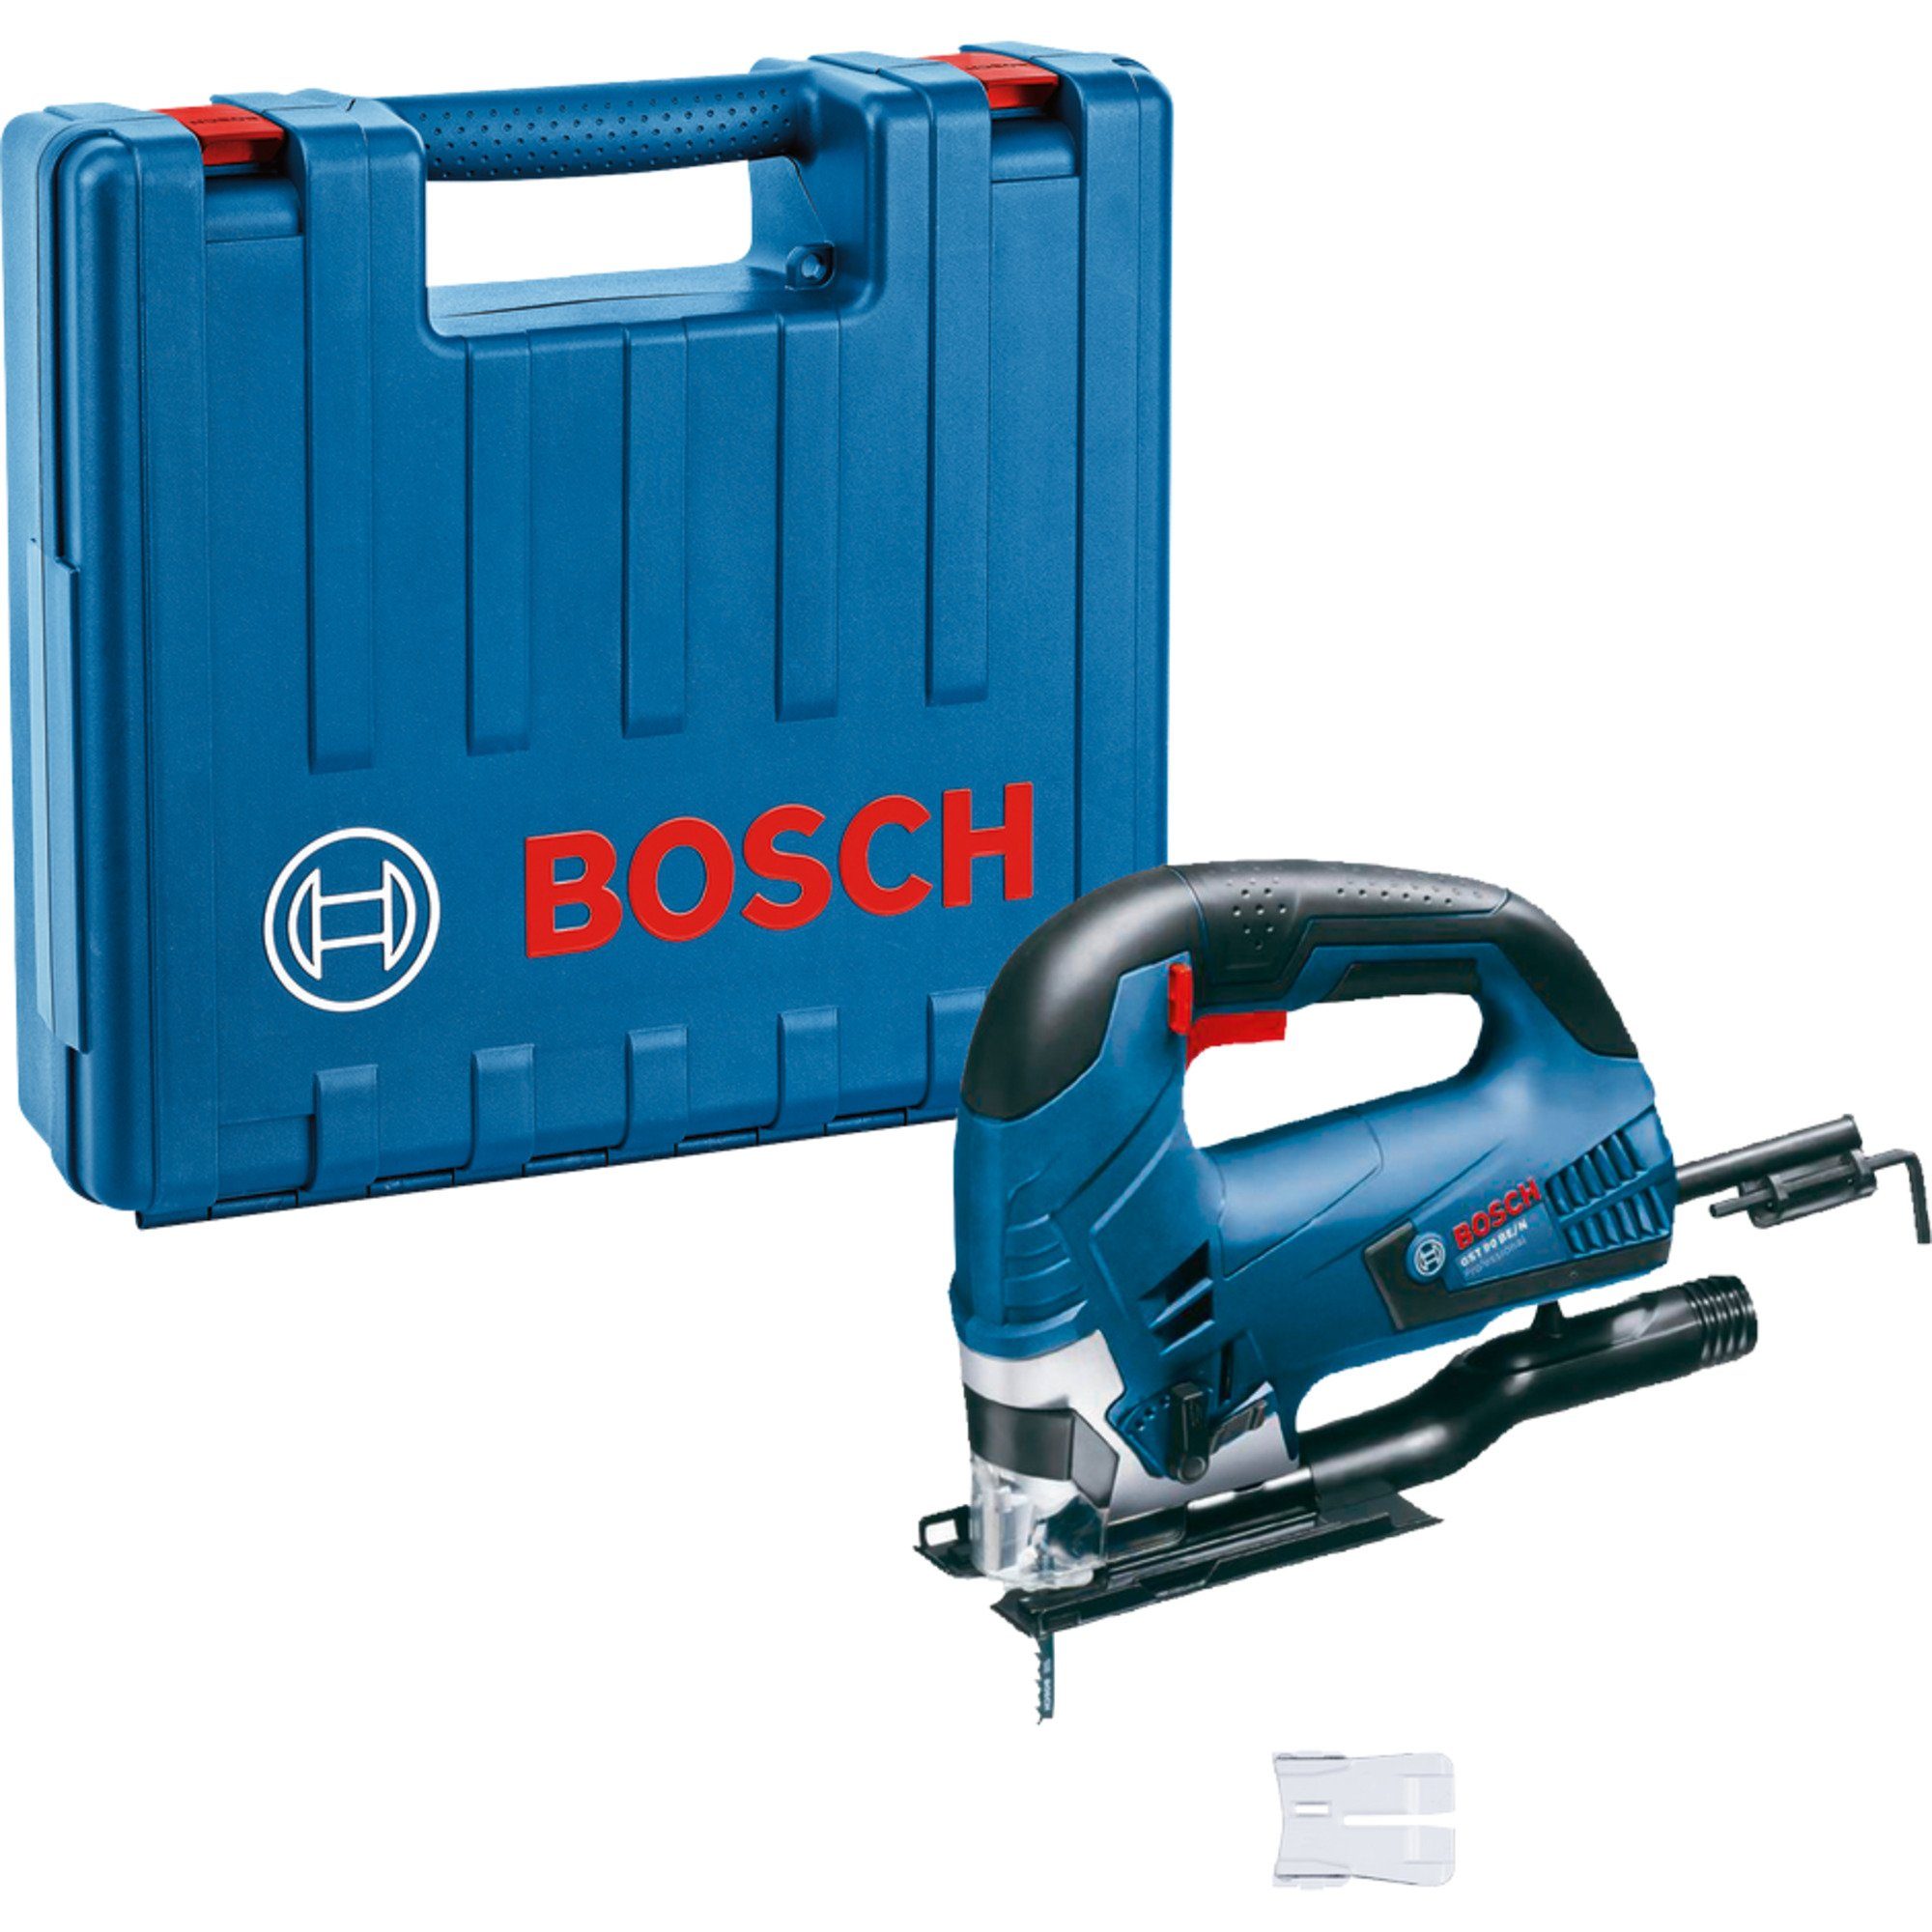 BOSCH Stichsäge BE GST Bosch Stichsäge Professional 90